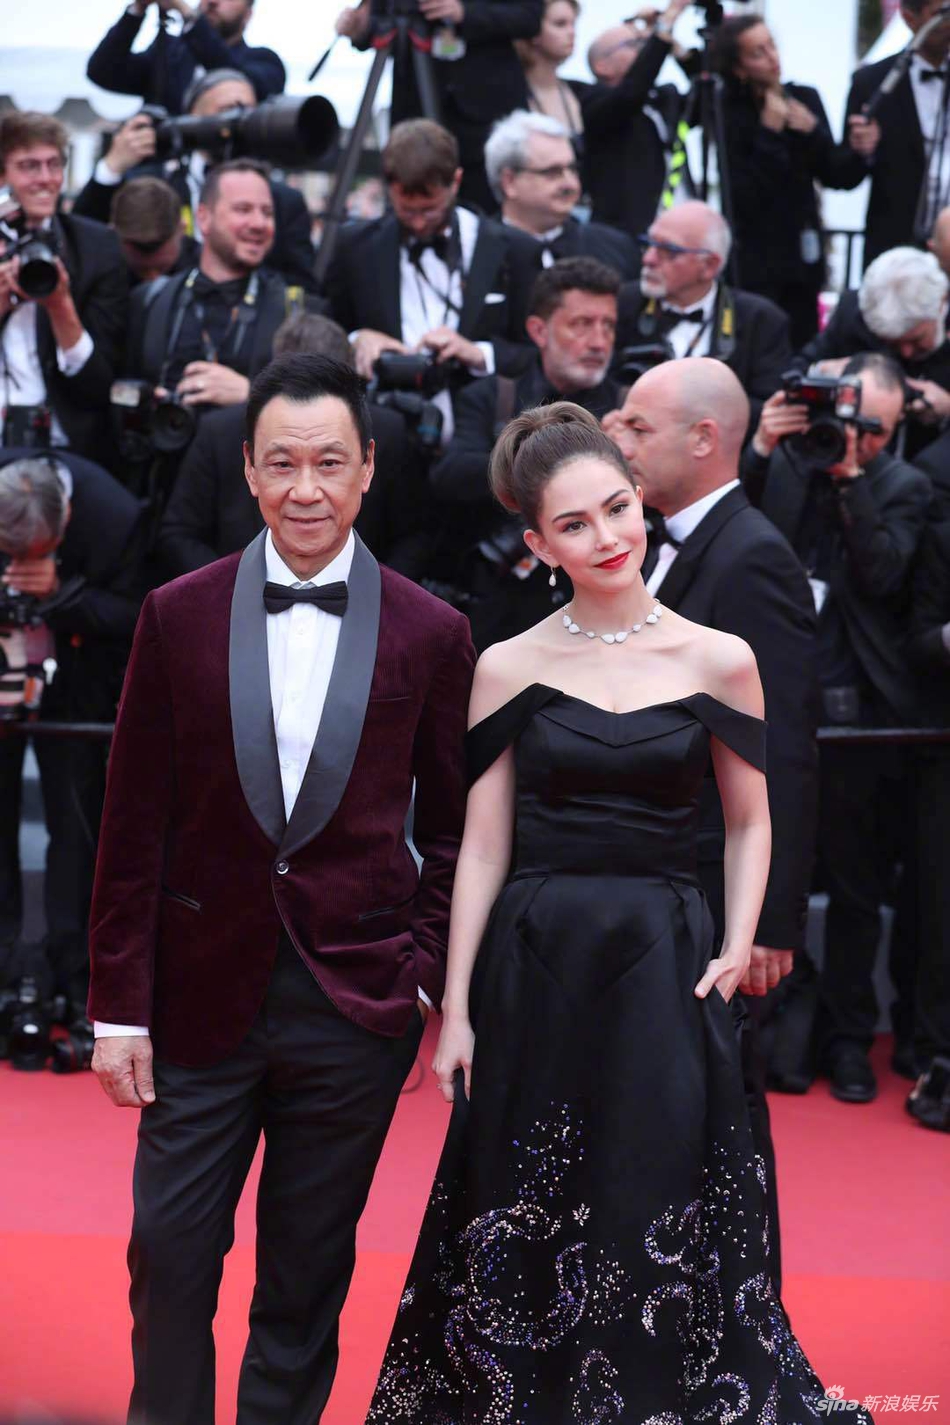 Không có Phạm Băng Băng, sao Hoa ngữ bị lấn át tại thảm đỏ Cannes 2019 - Ảnh 7